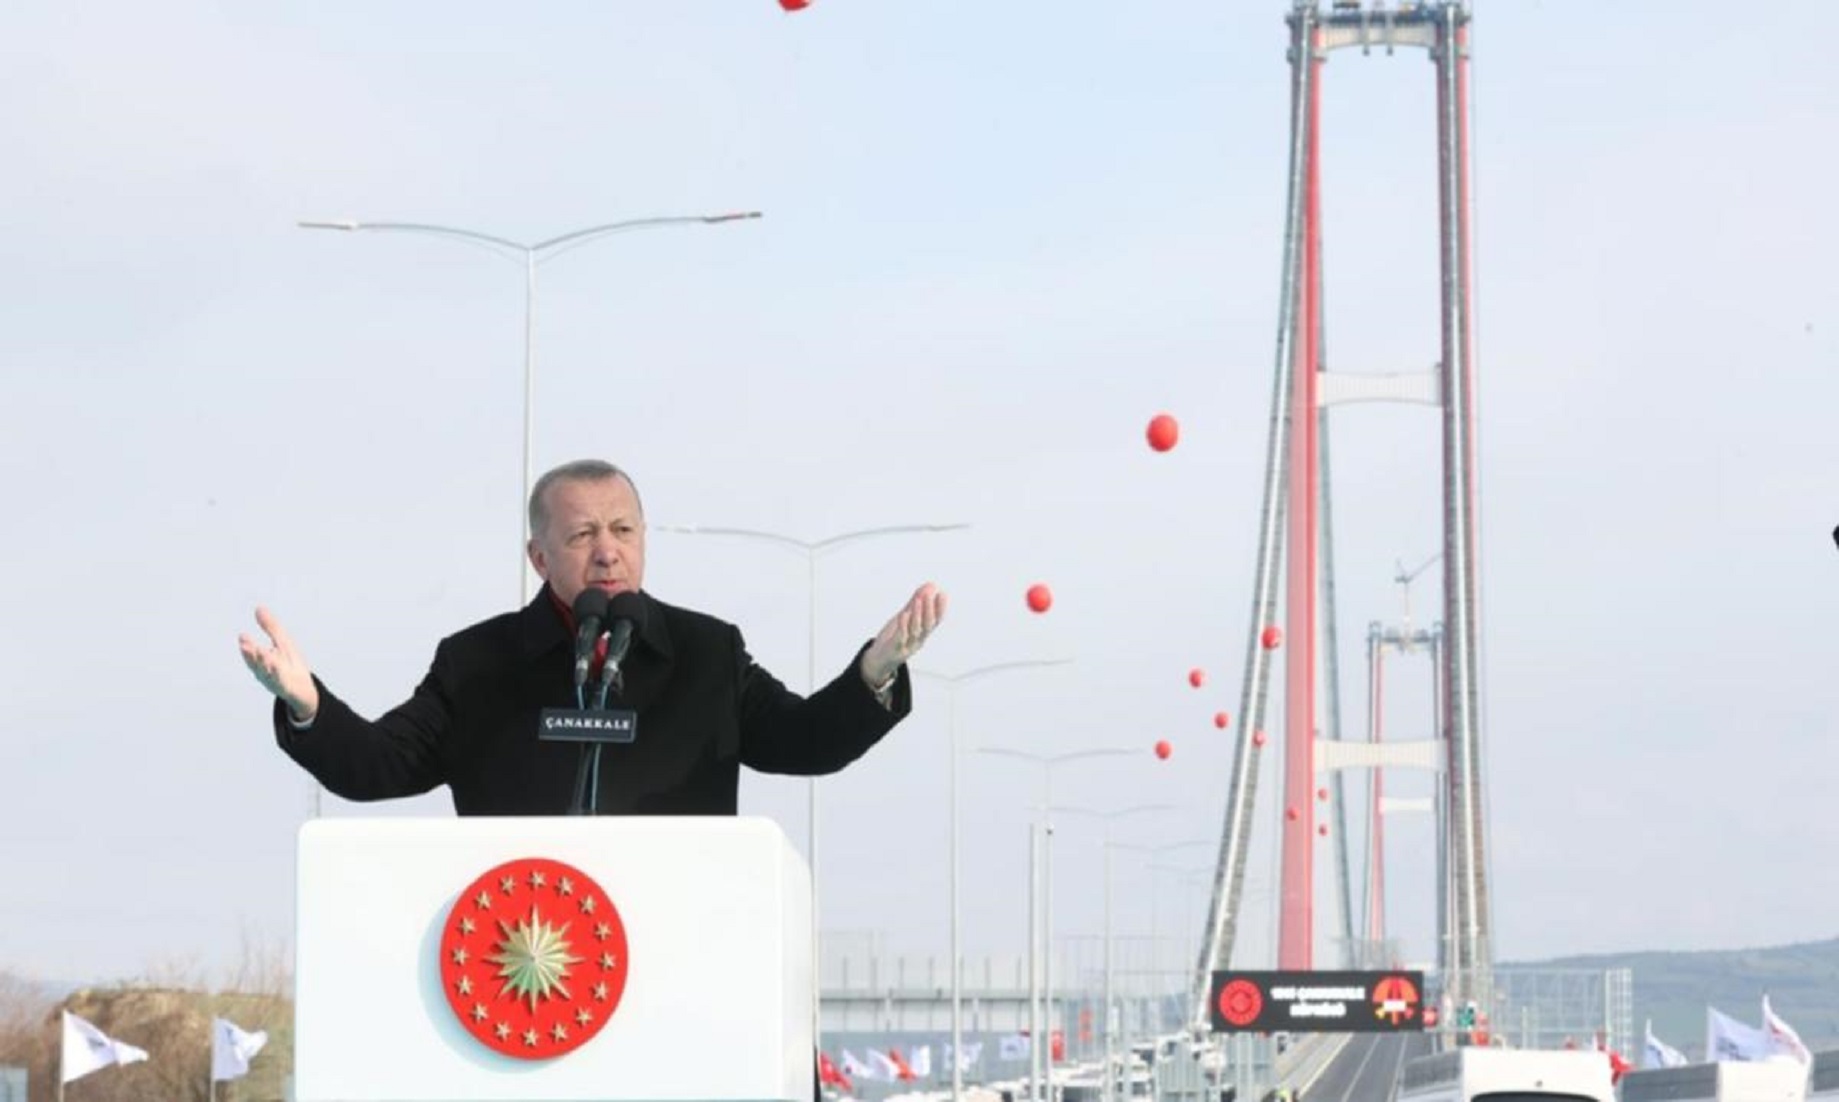 Turkey Inaugurates First Bridge Over Dardanelles Strait